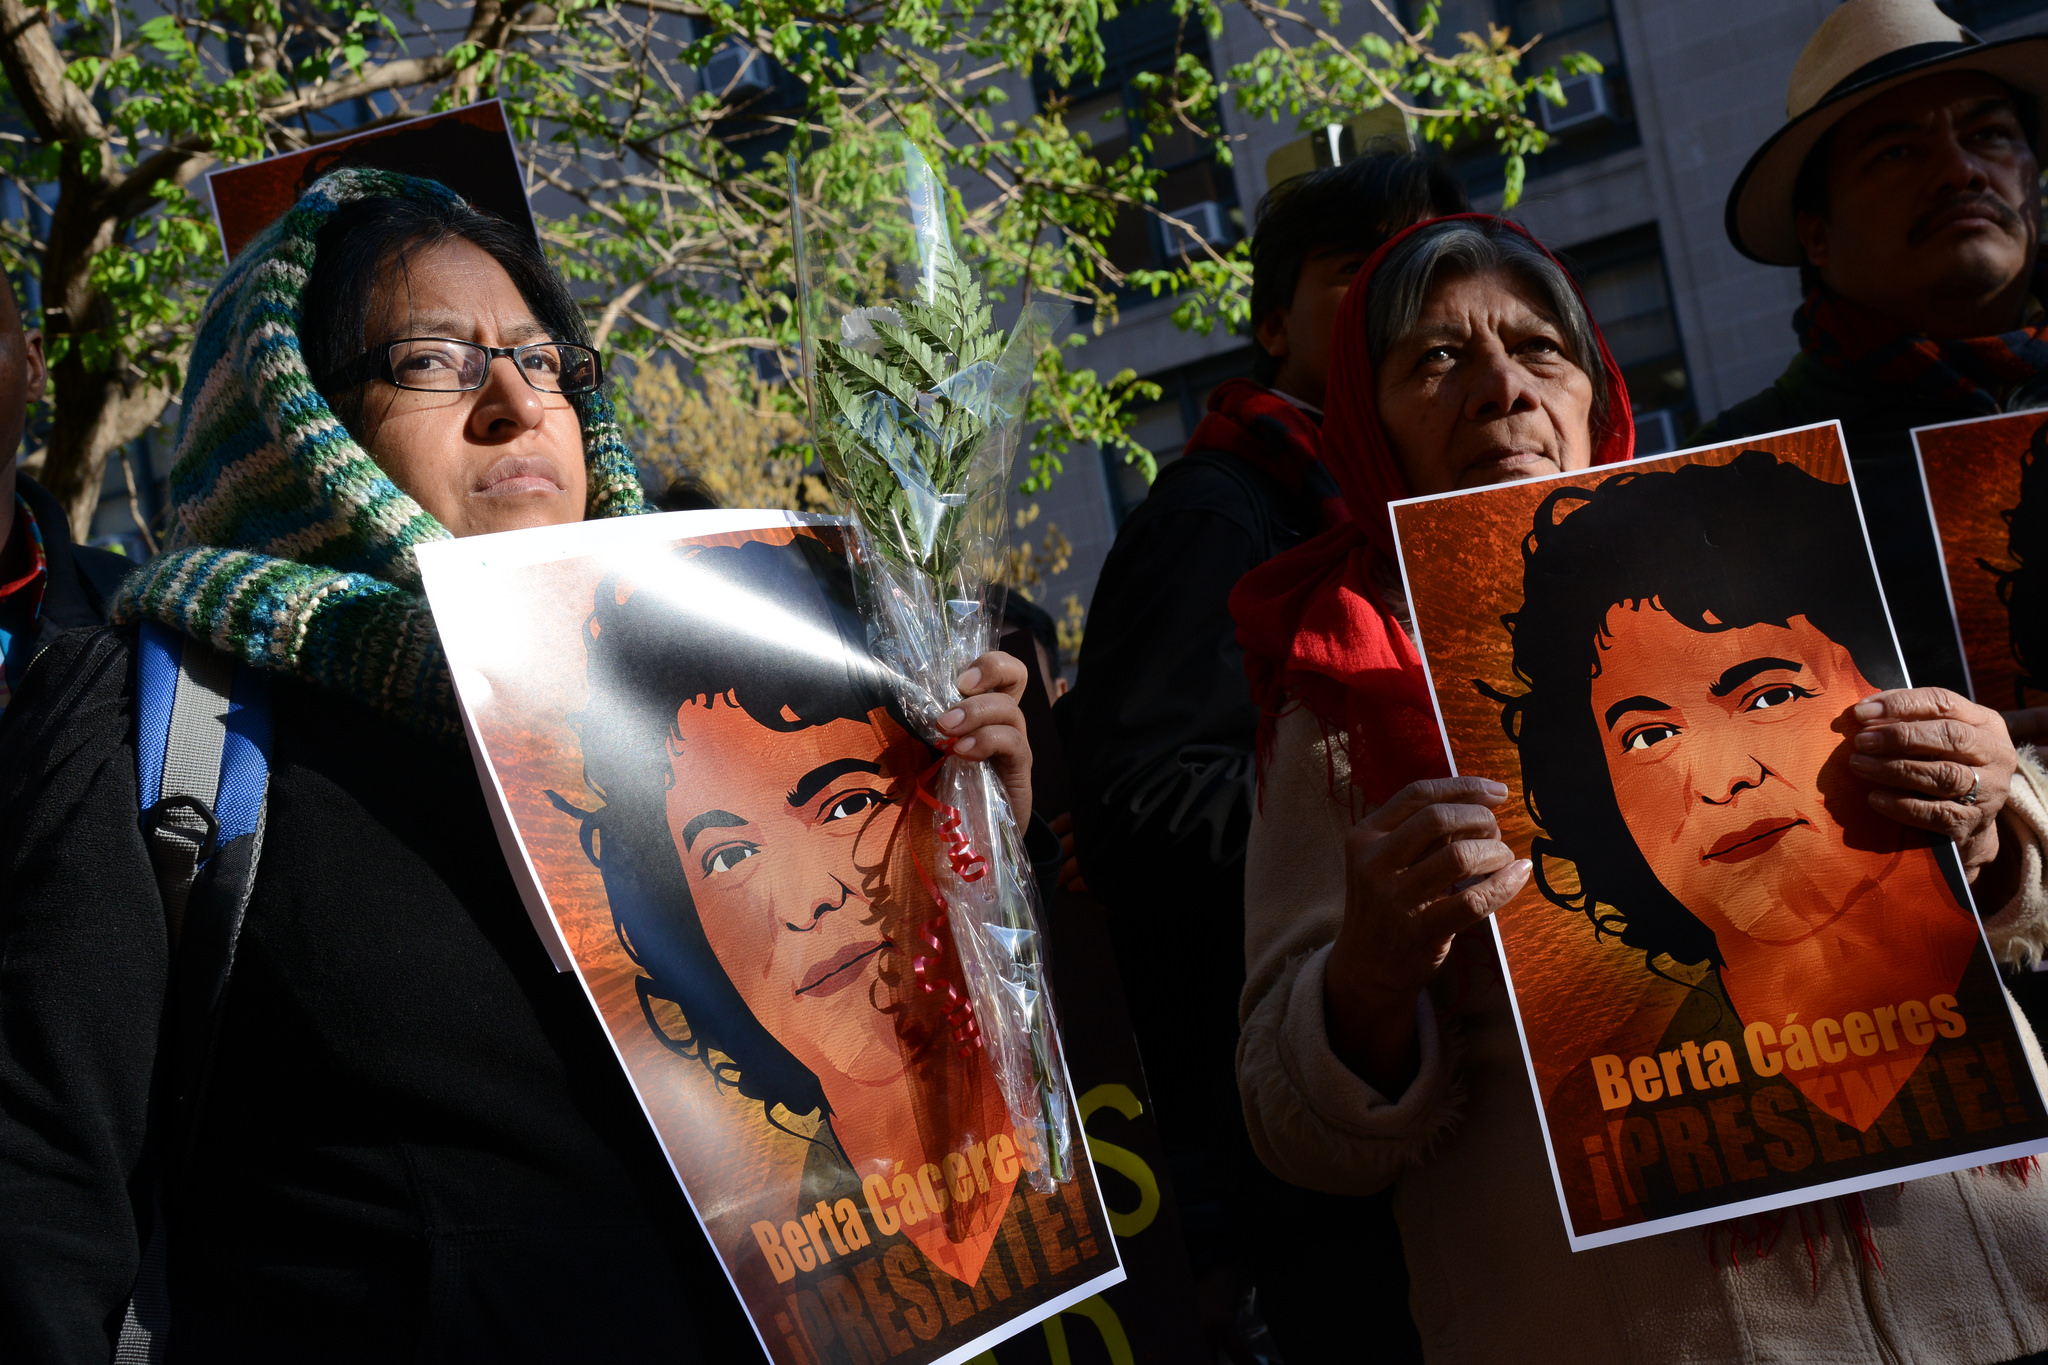 Foto: Protesta por muerte de Berta Cáceres en Honduras. Cortesía CIDH / Daniel Cima.